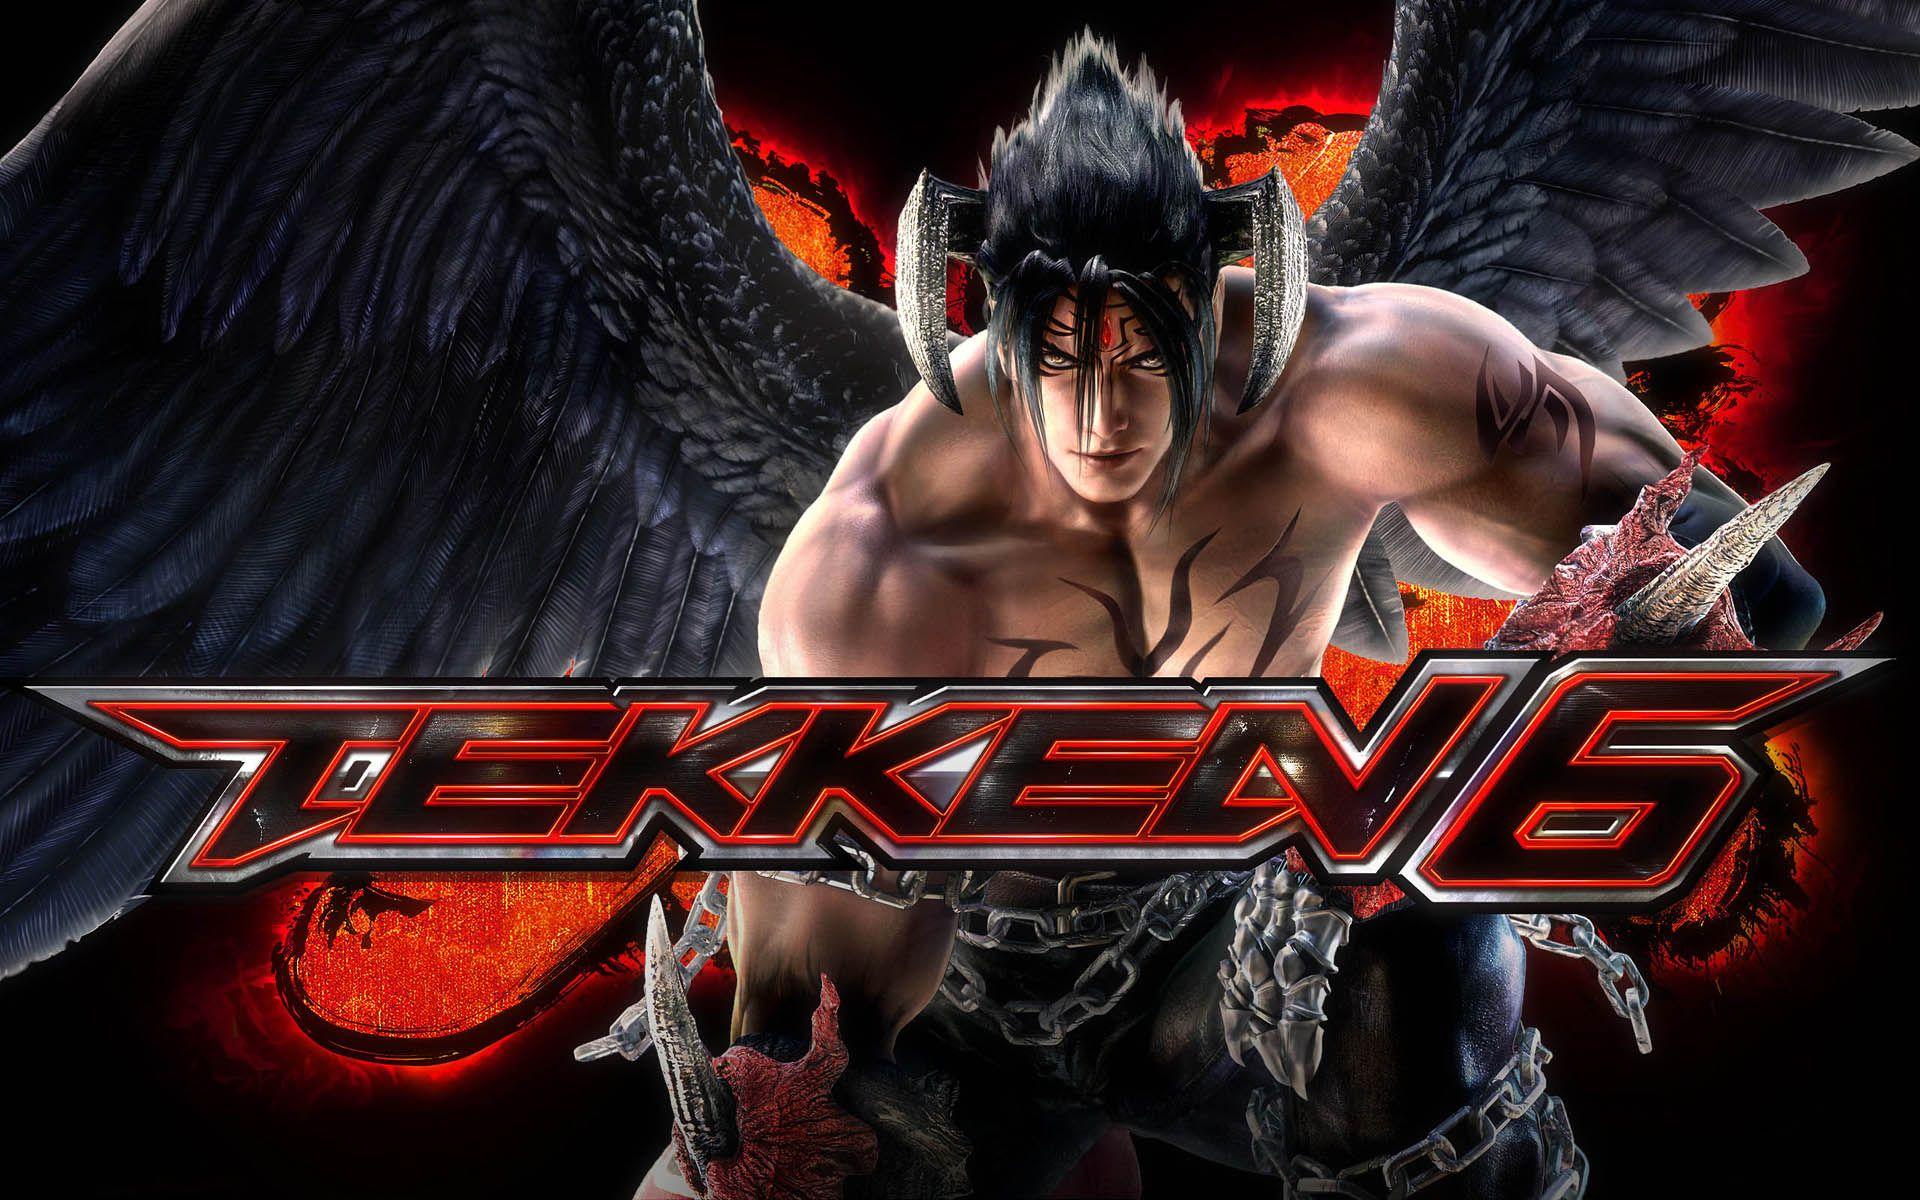 Devil Jin Tekken 6 Wallpapers.